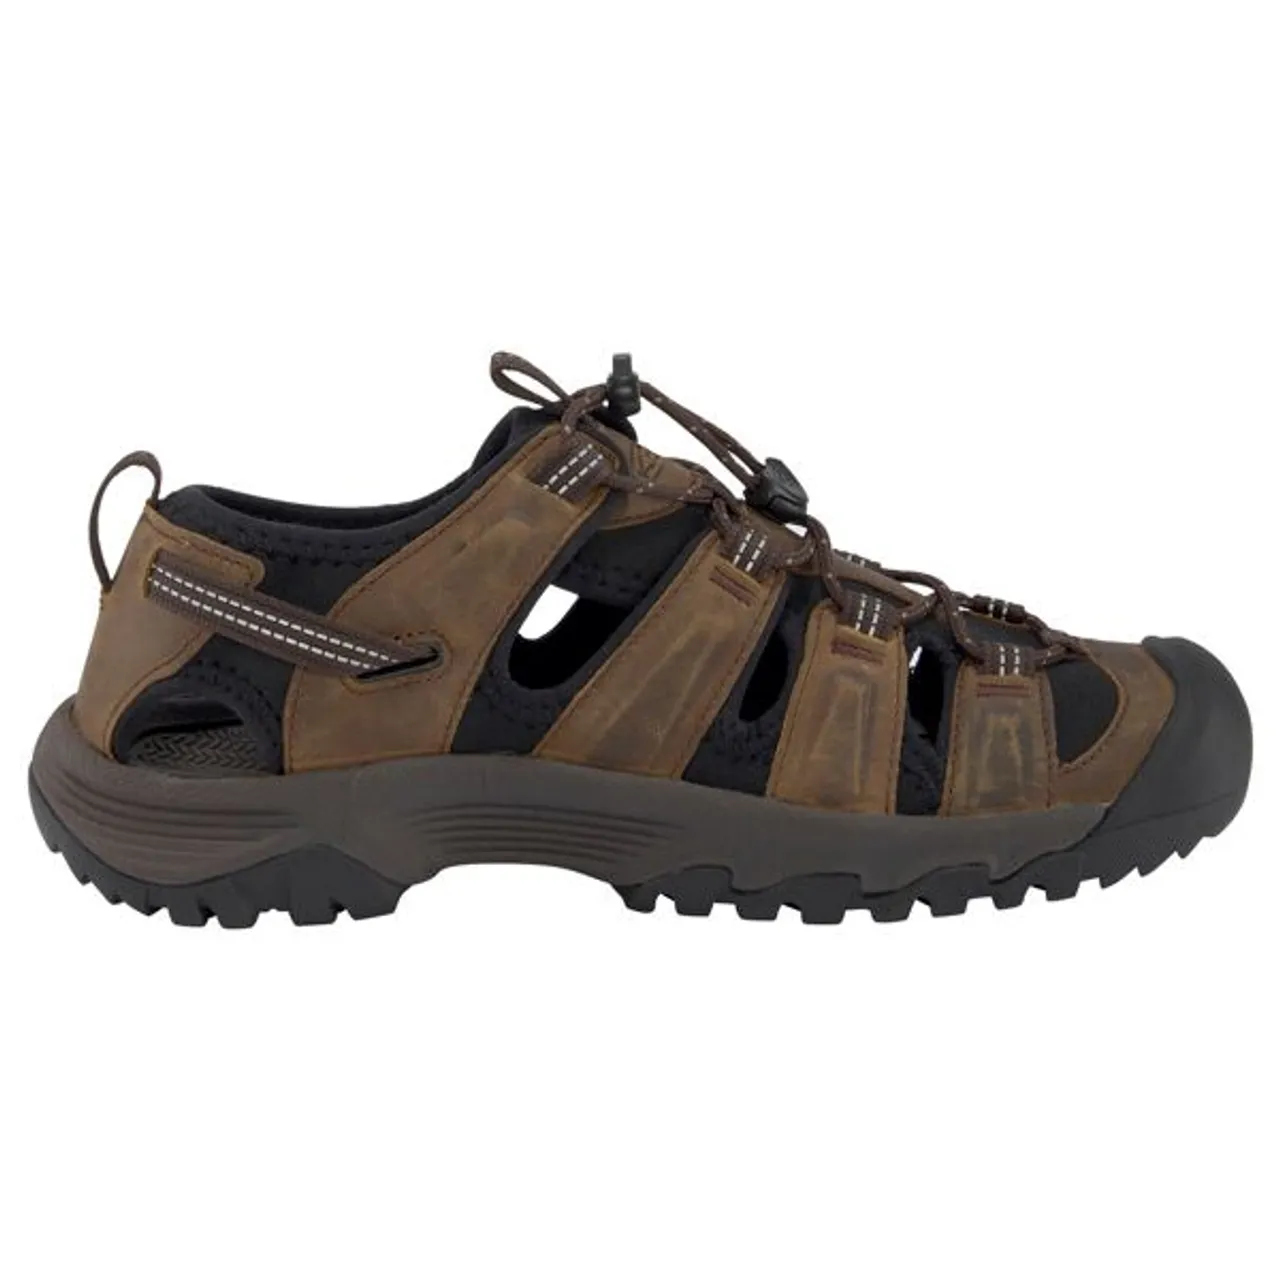 Sandale KEEN "TARGHEE III S" Gr. 42,5, braun Schuhe Schnürhalbschuhe